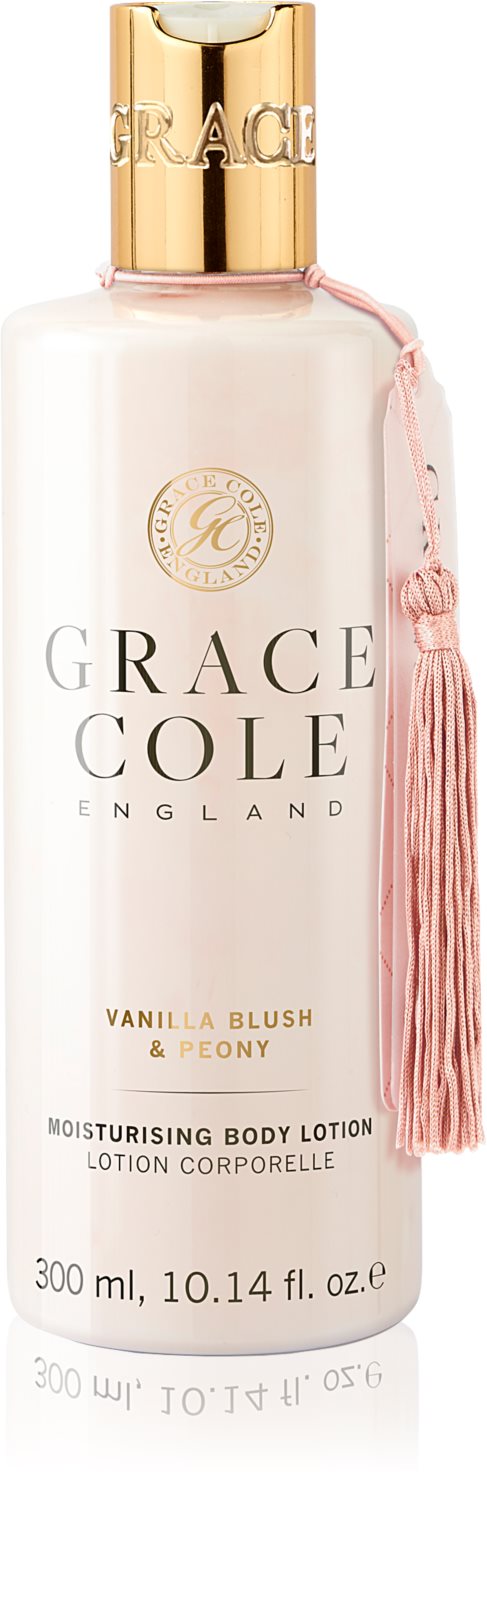 GRACE COLE: Vanilla Blush & Peony